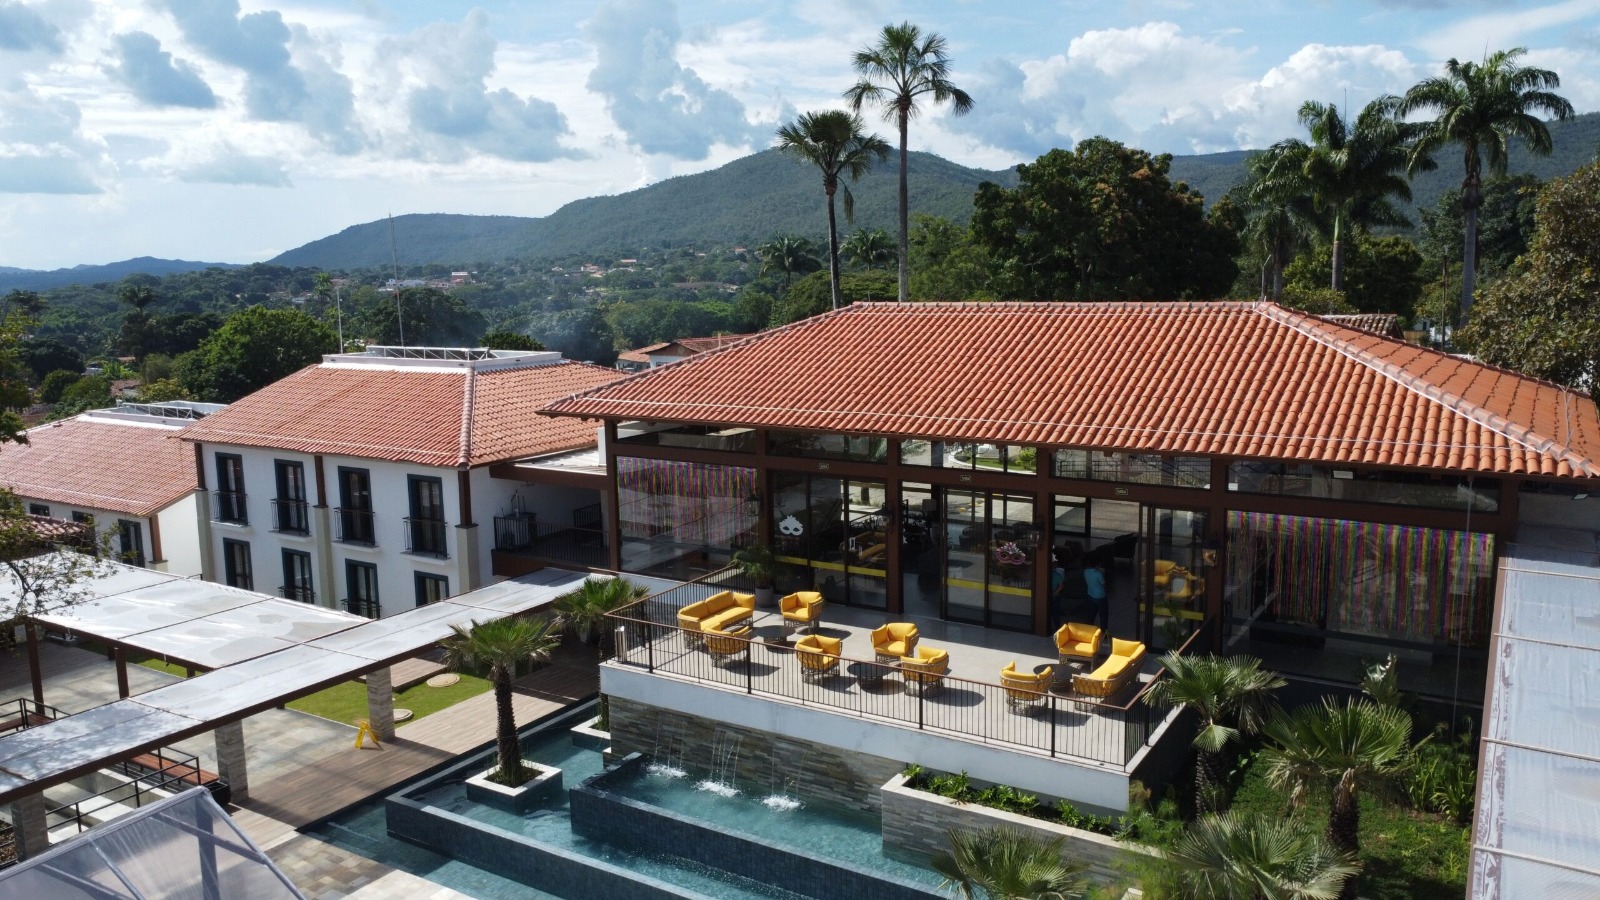 Quinta Santa Bárbara Eco Resort